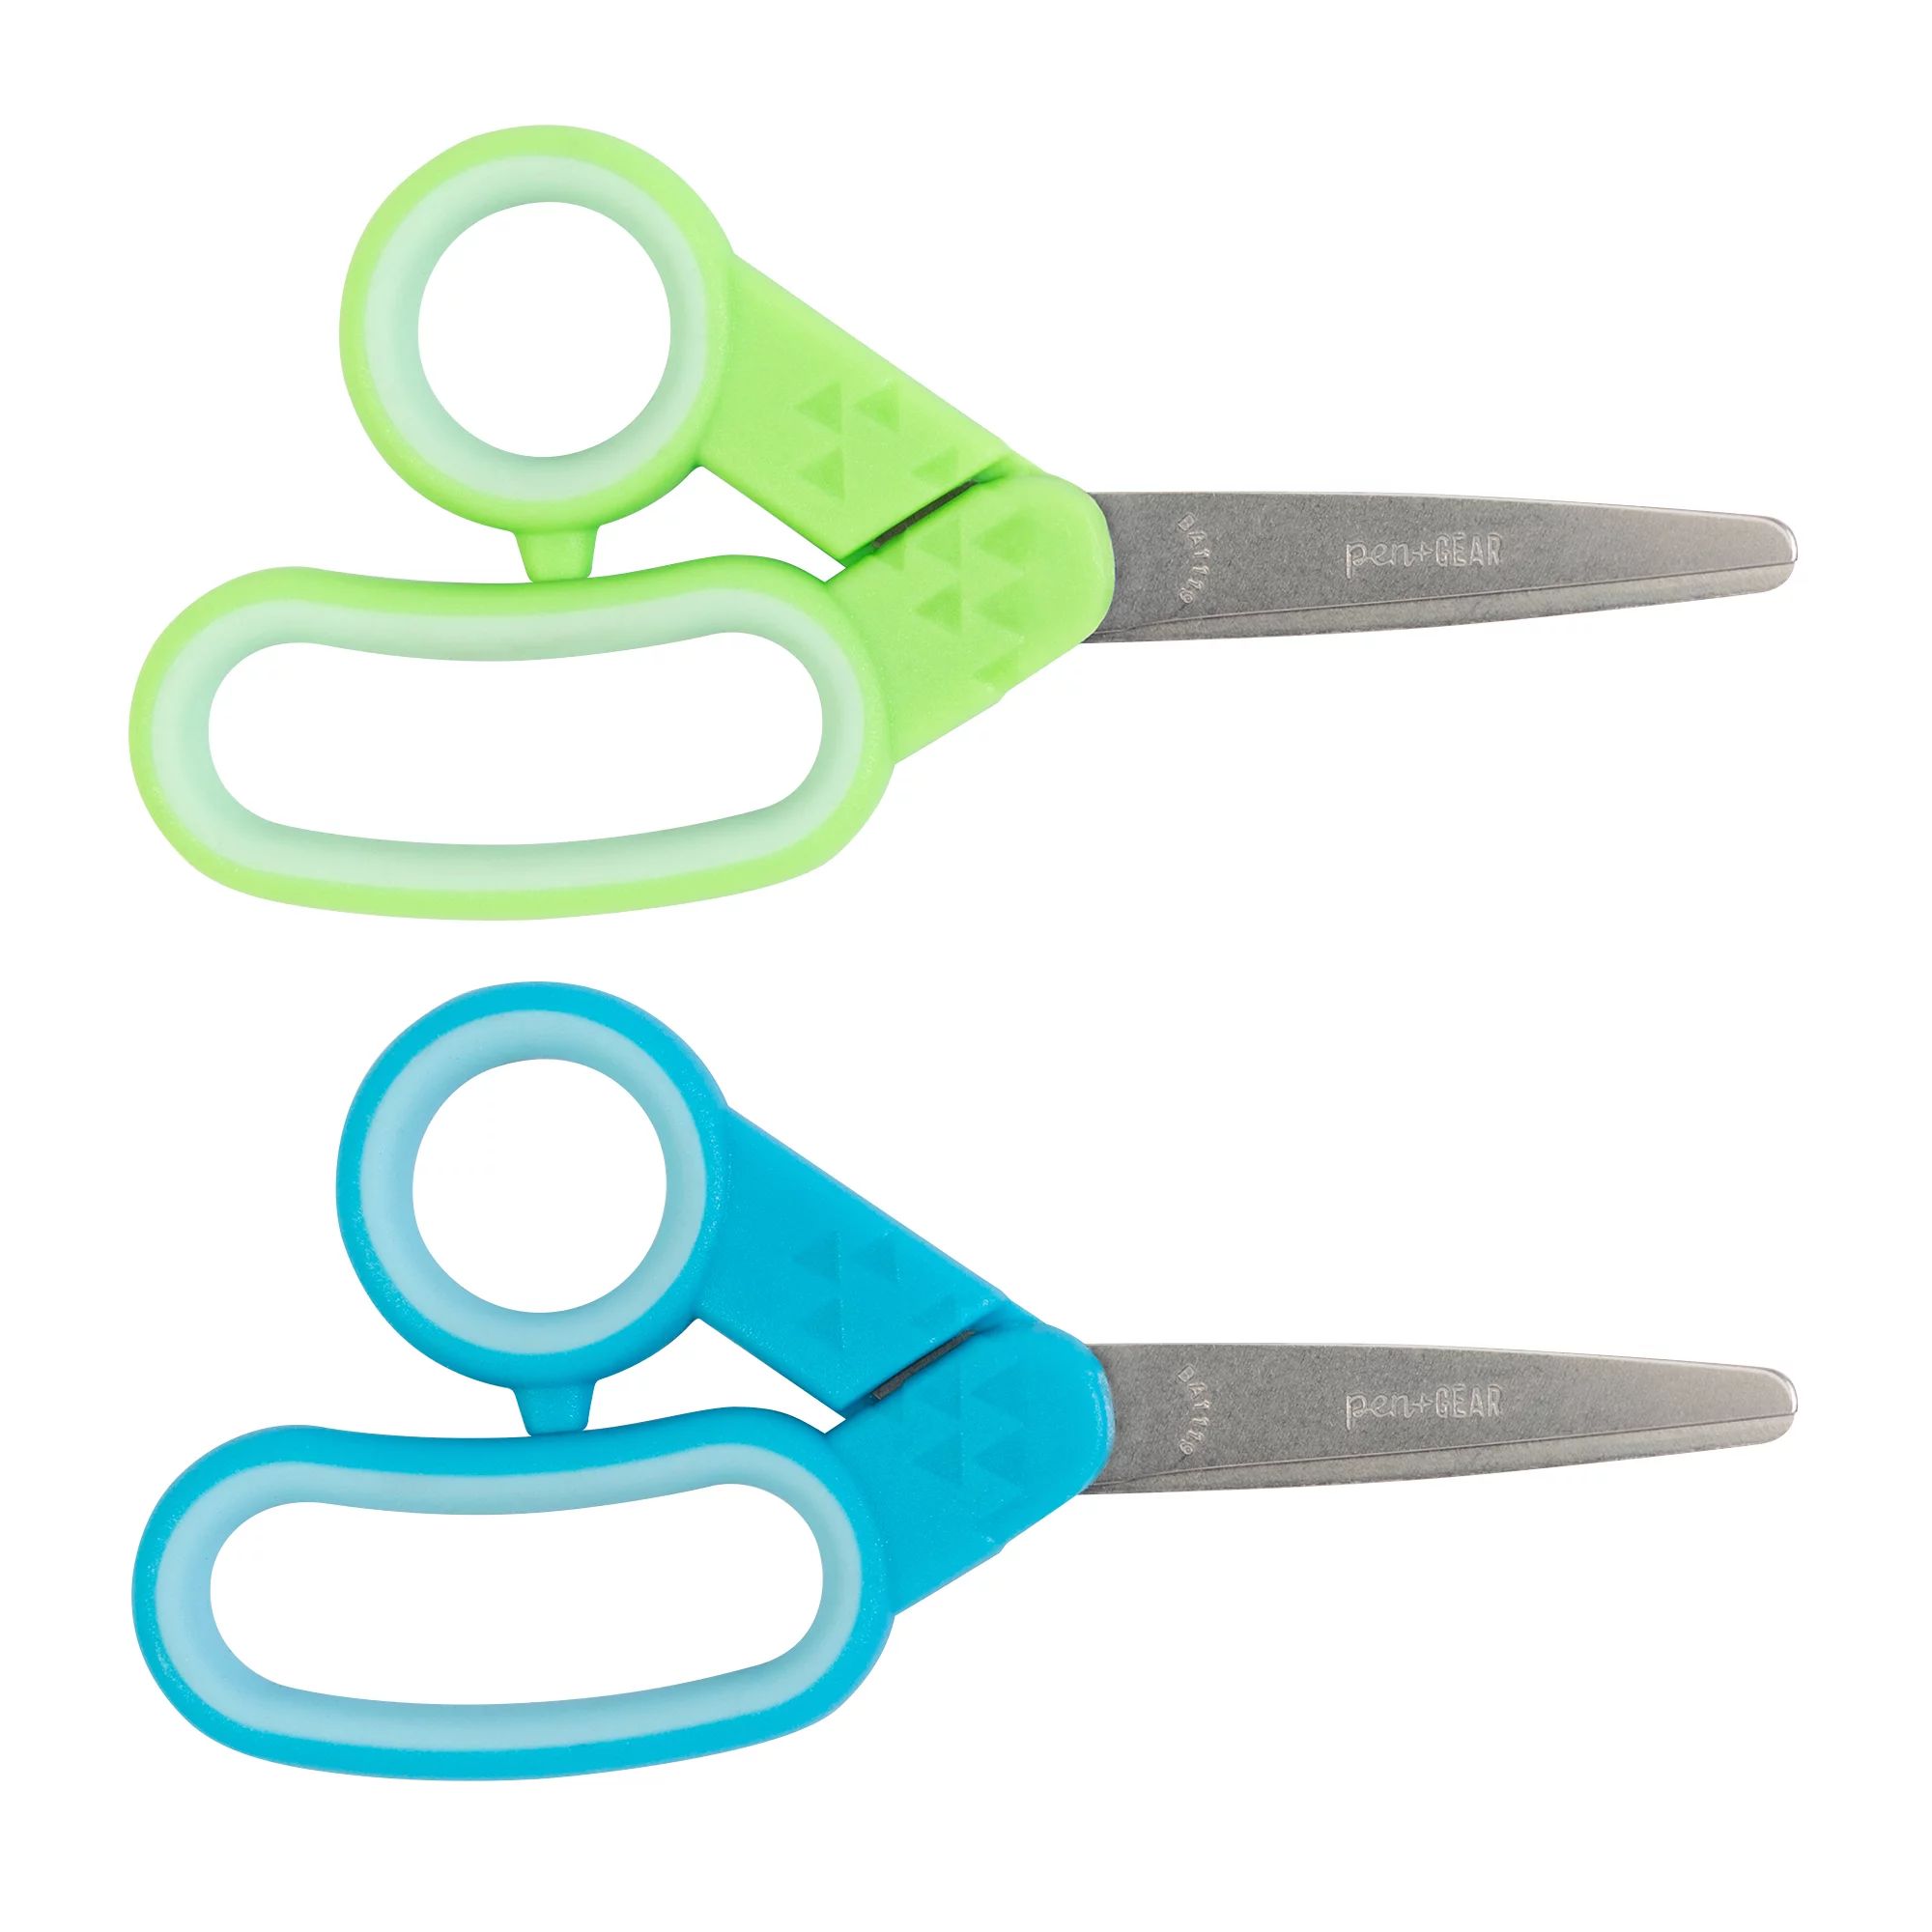 Pen+Gear 5" Blunt 2 Pack, Kids Scissors, Blue and Green, 153510-1004 | Walmart (US)